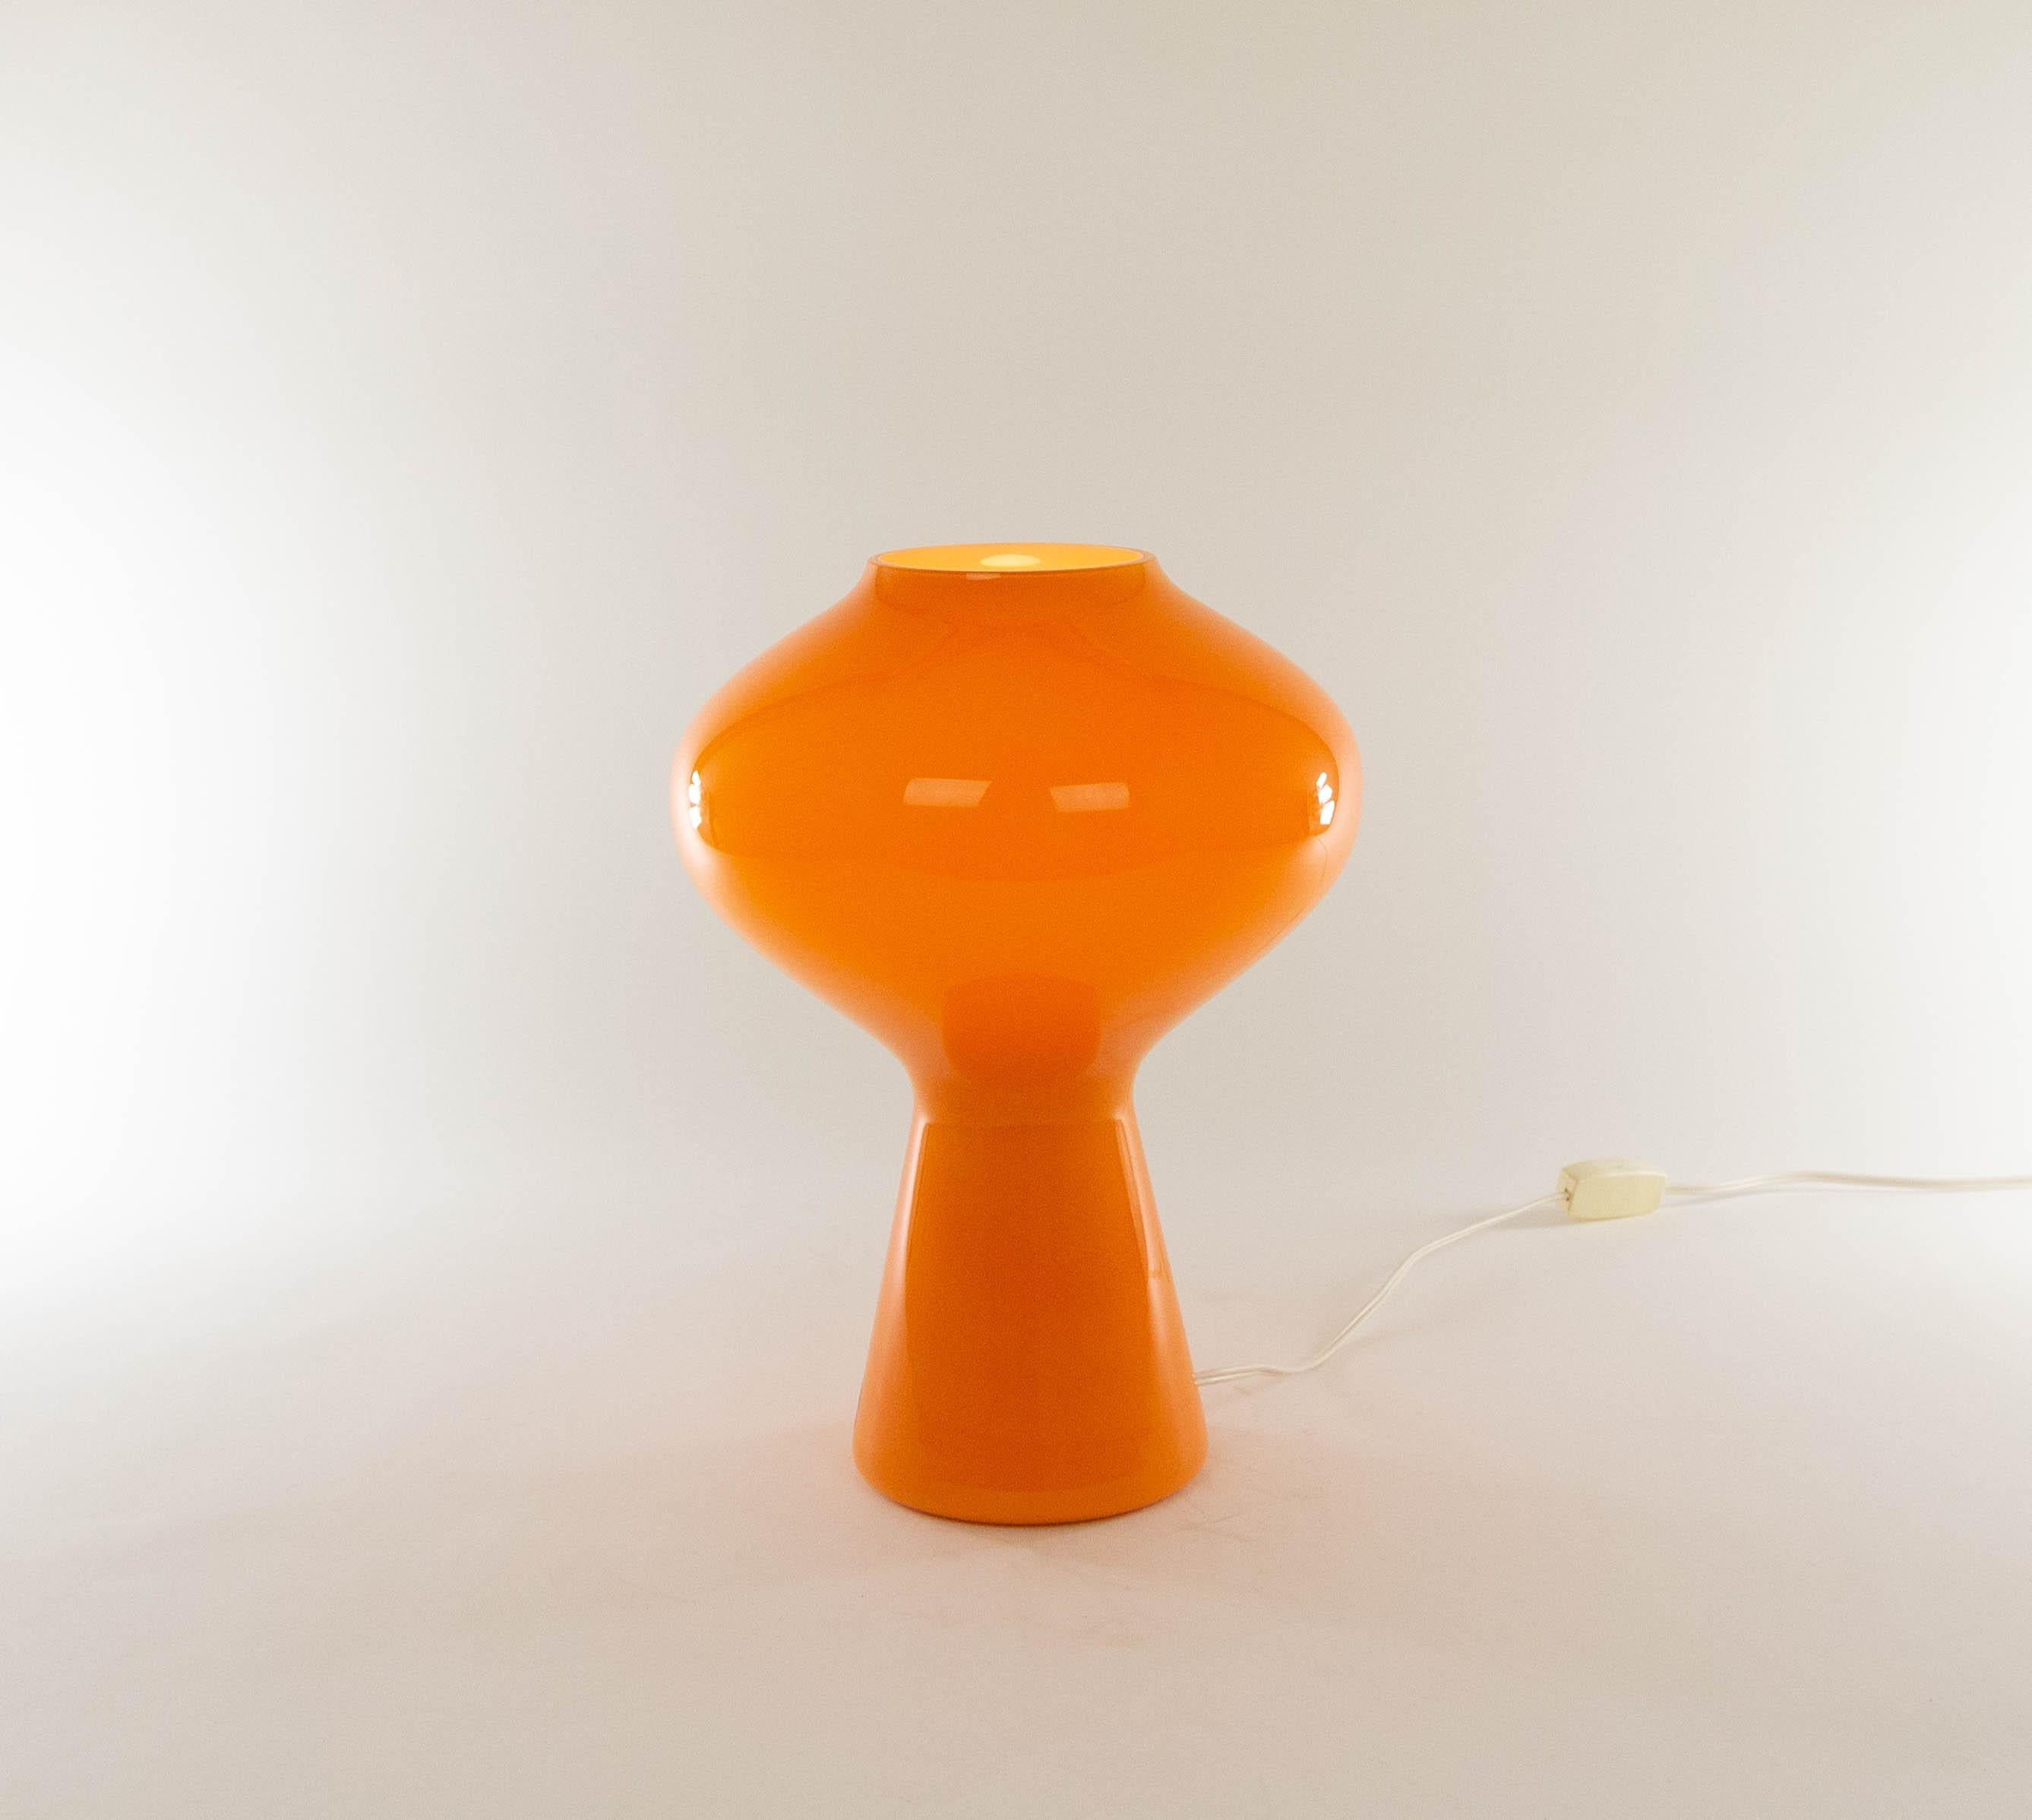 Lampe de table Fungo en verre orange soufflé à la bouche, conçue par Massimo Vignelli au début de son impressionnante carrière dans le design et exécutée par le spécialiste du verre de Murano, Venini. Il s'agit de la plus grande taille de la lampe